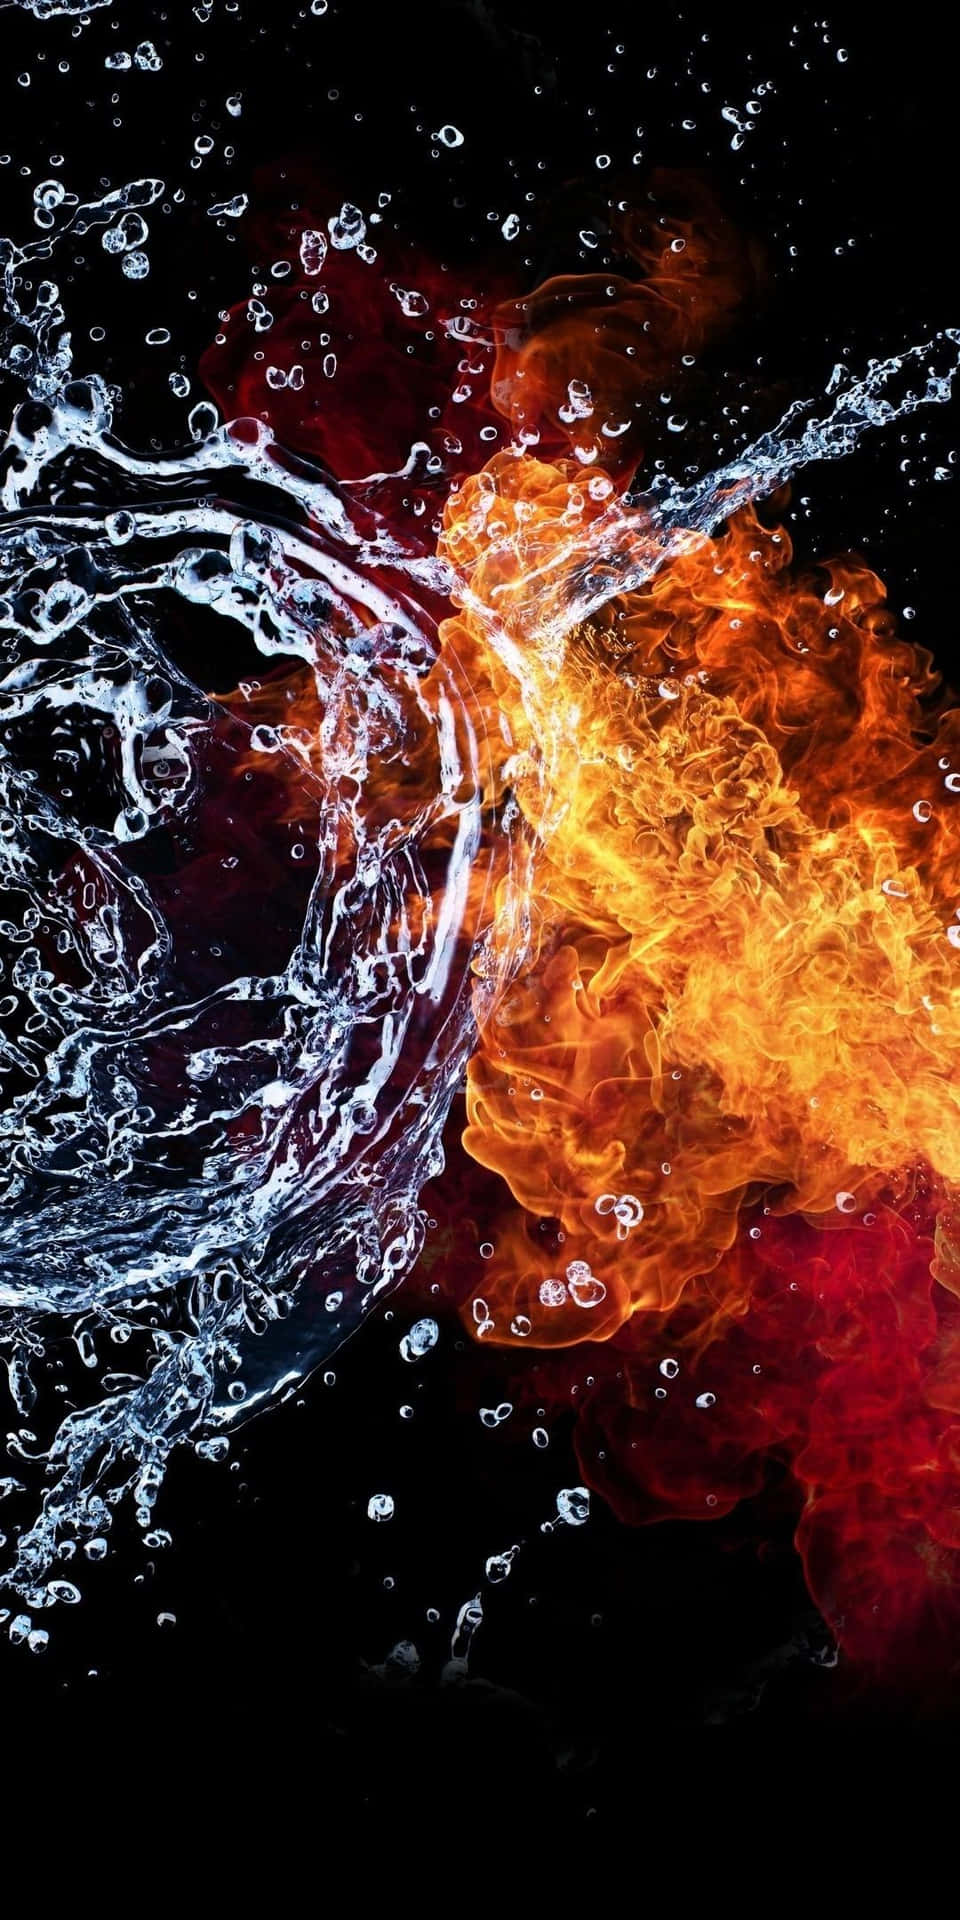 Feuertrifft Auf Wasser In Einer Explosiven Kollision Wallpaper